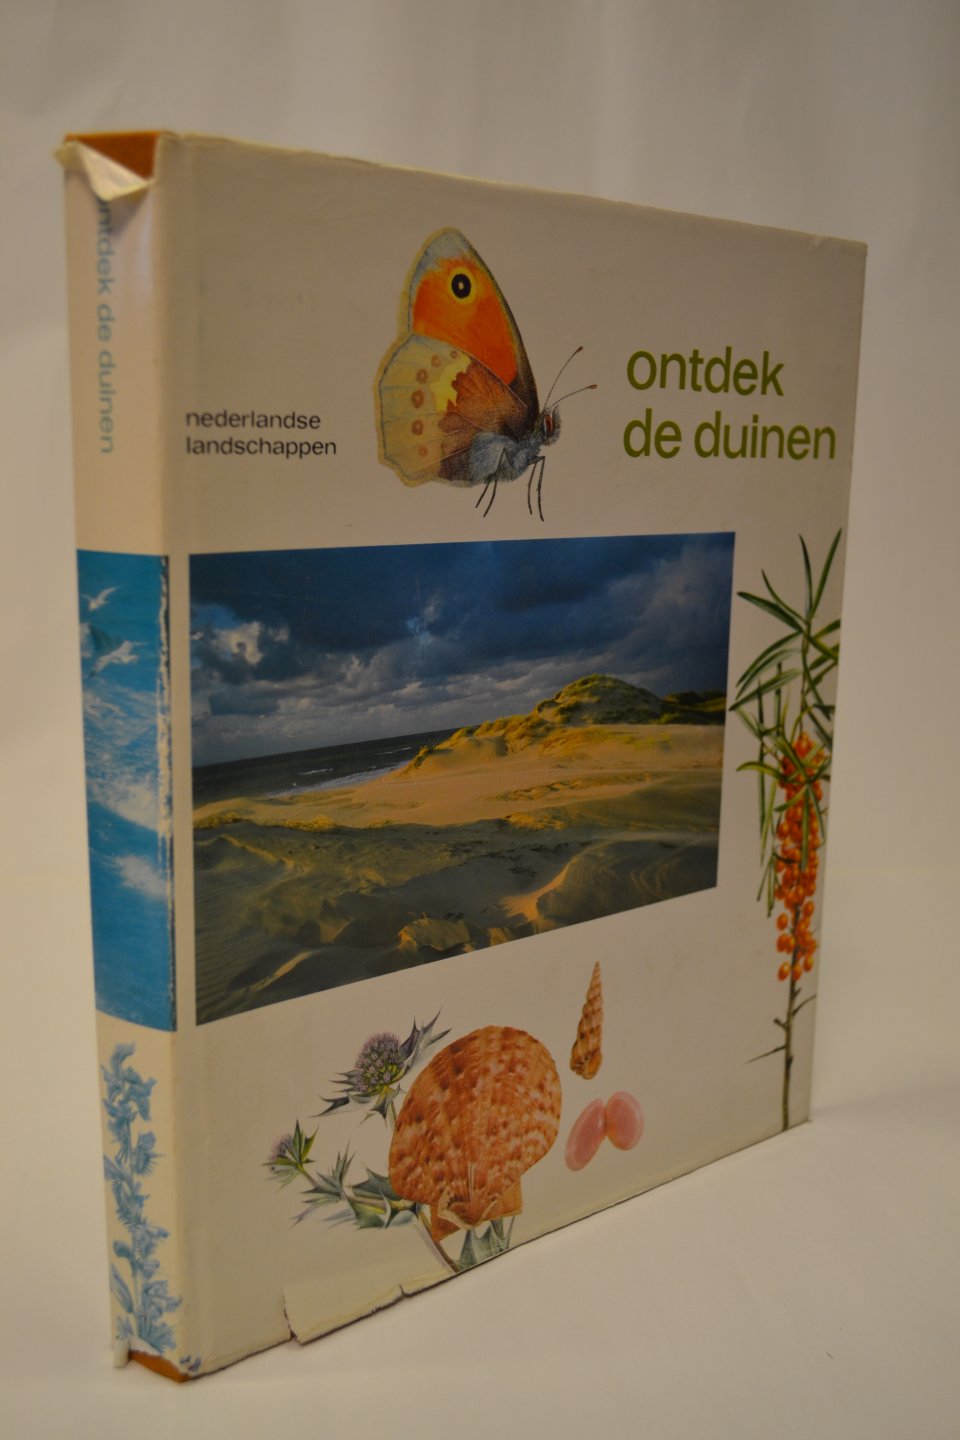 Adriani, Gonggrijp, Nijkamp, van Regteren-Altena - Ontdek de duinen - Nederlandse landschappen